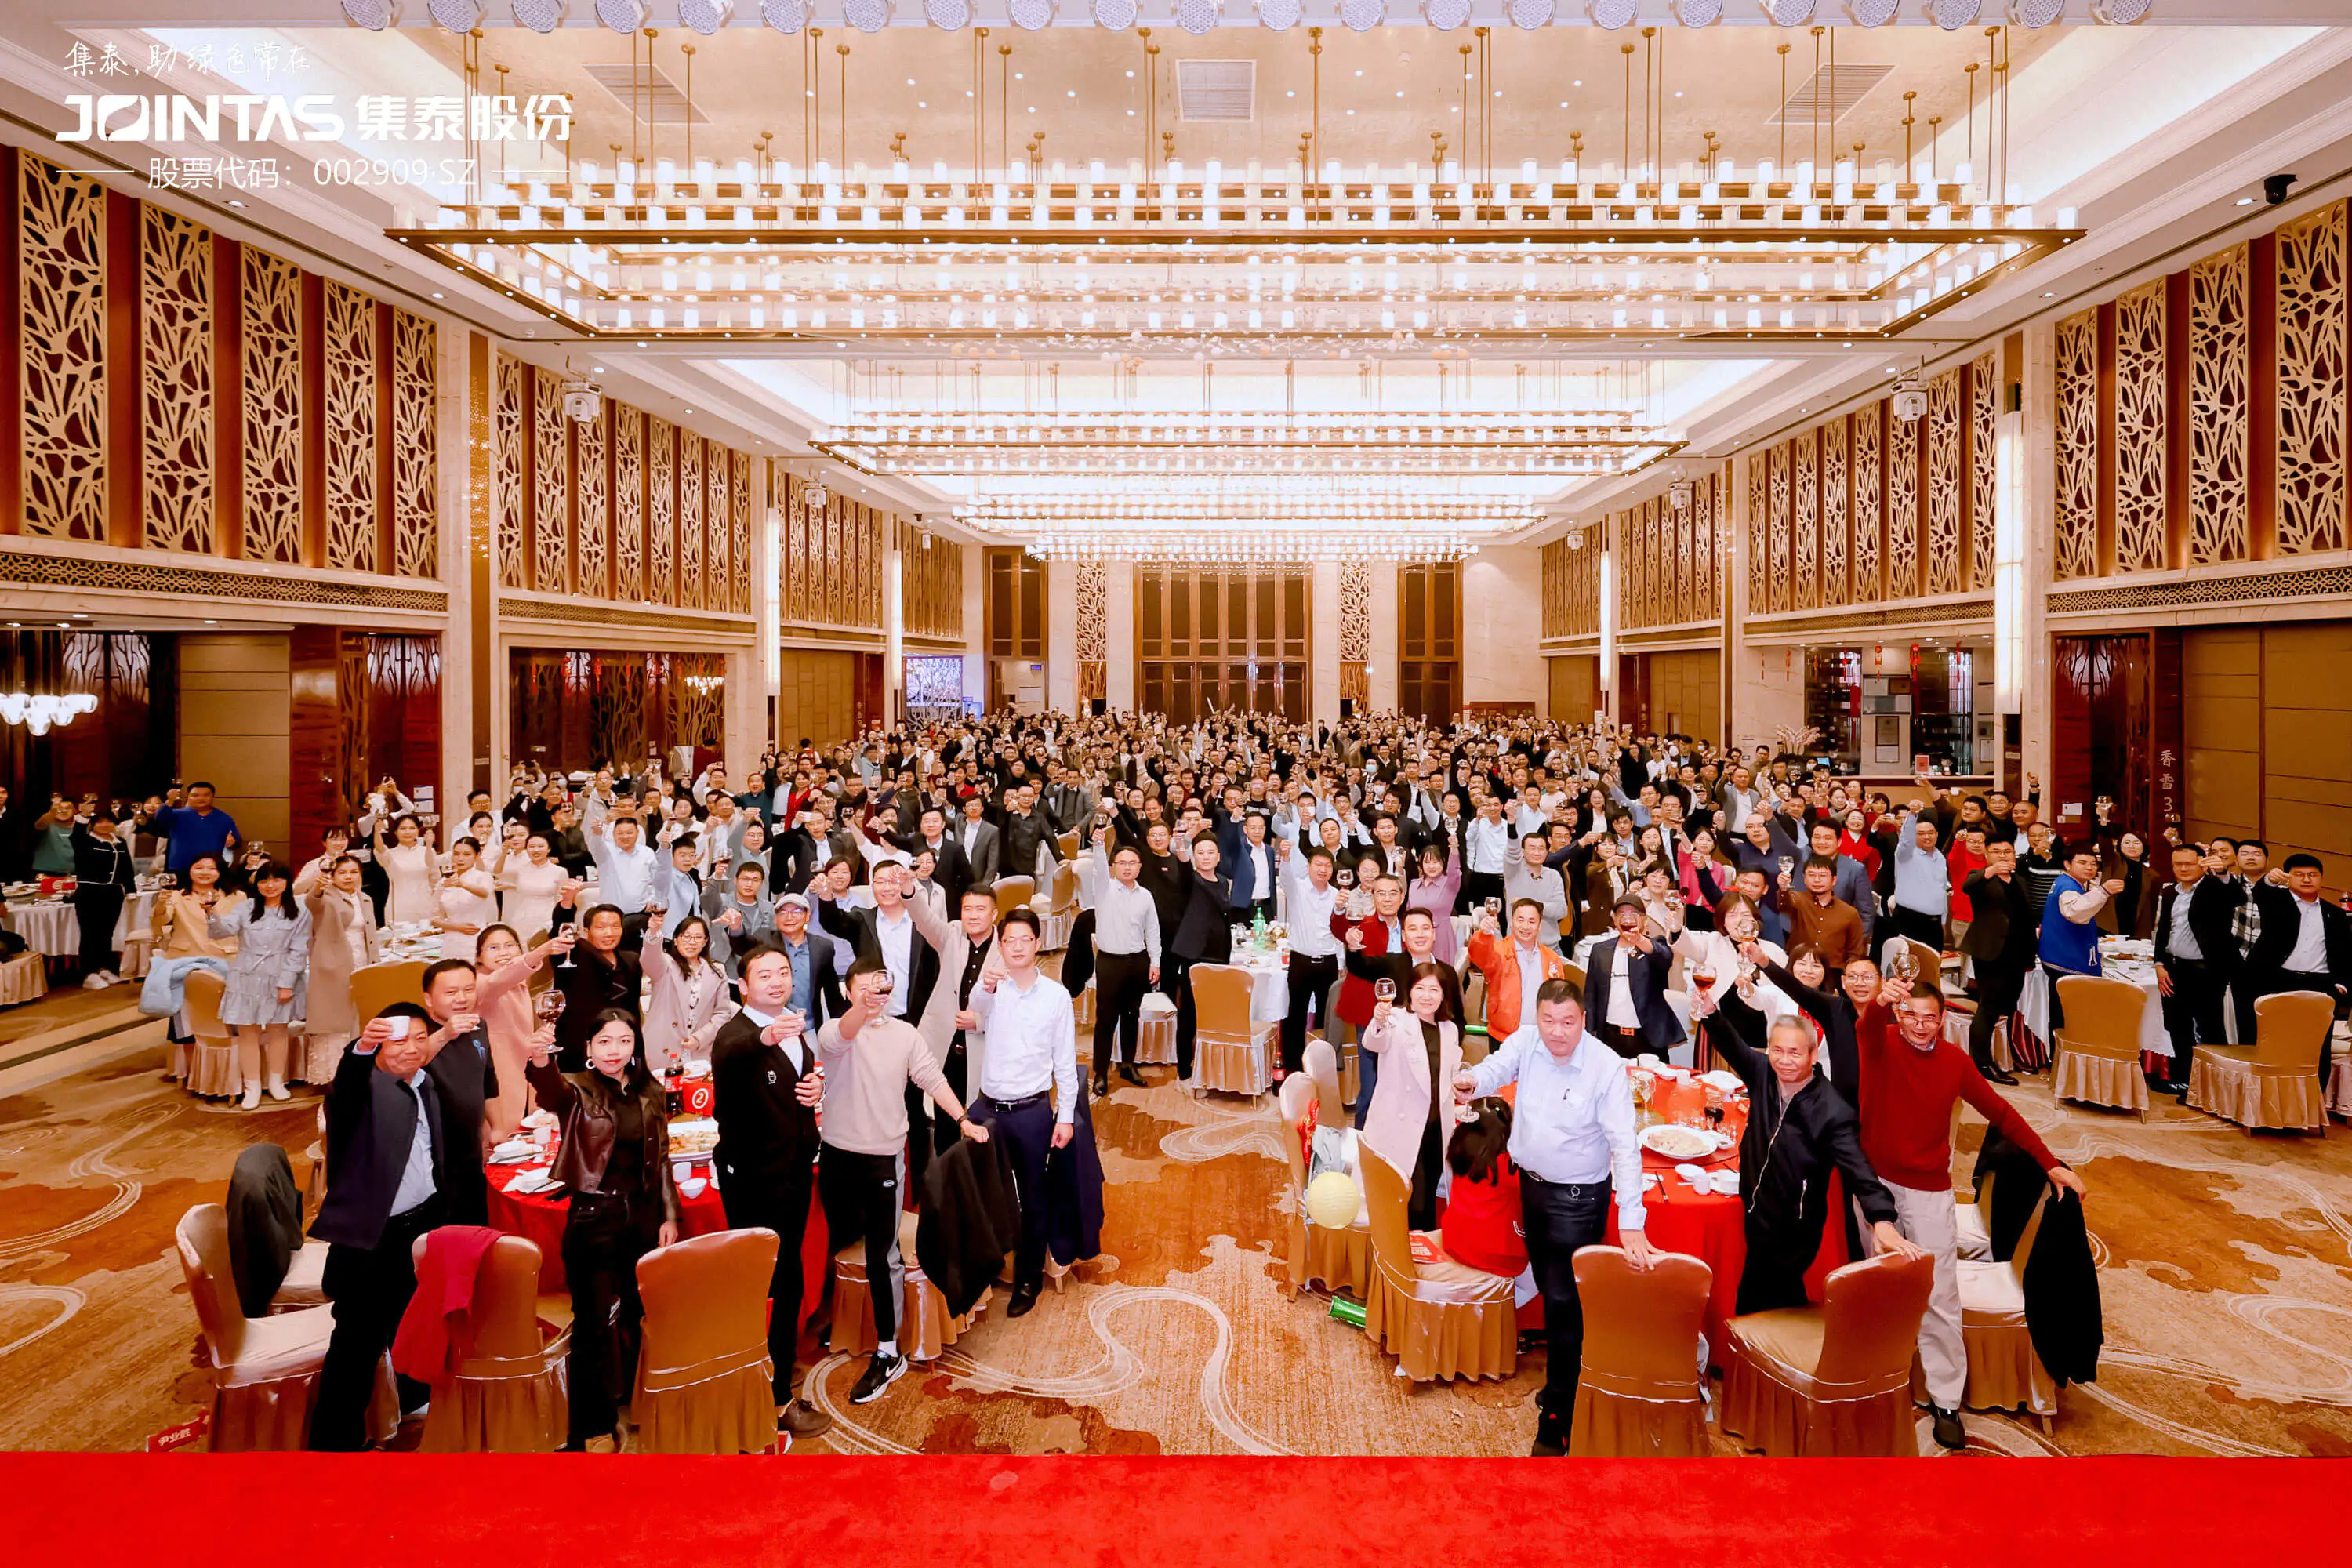 la conférence d’excellente mention élogieuse et la cérémonie de remise des prix de Jointas Chemical Co., Ltd. se sont tenues en grande pompe à Guangzhou!